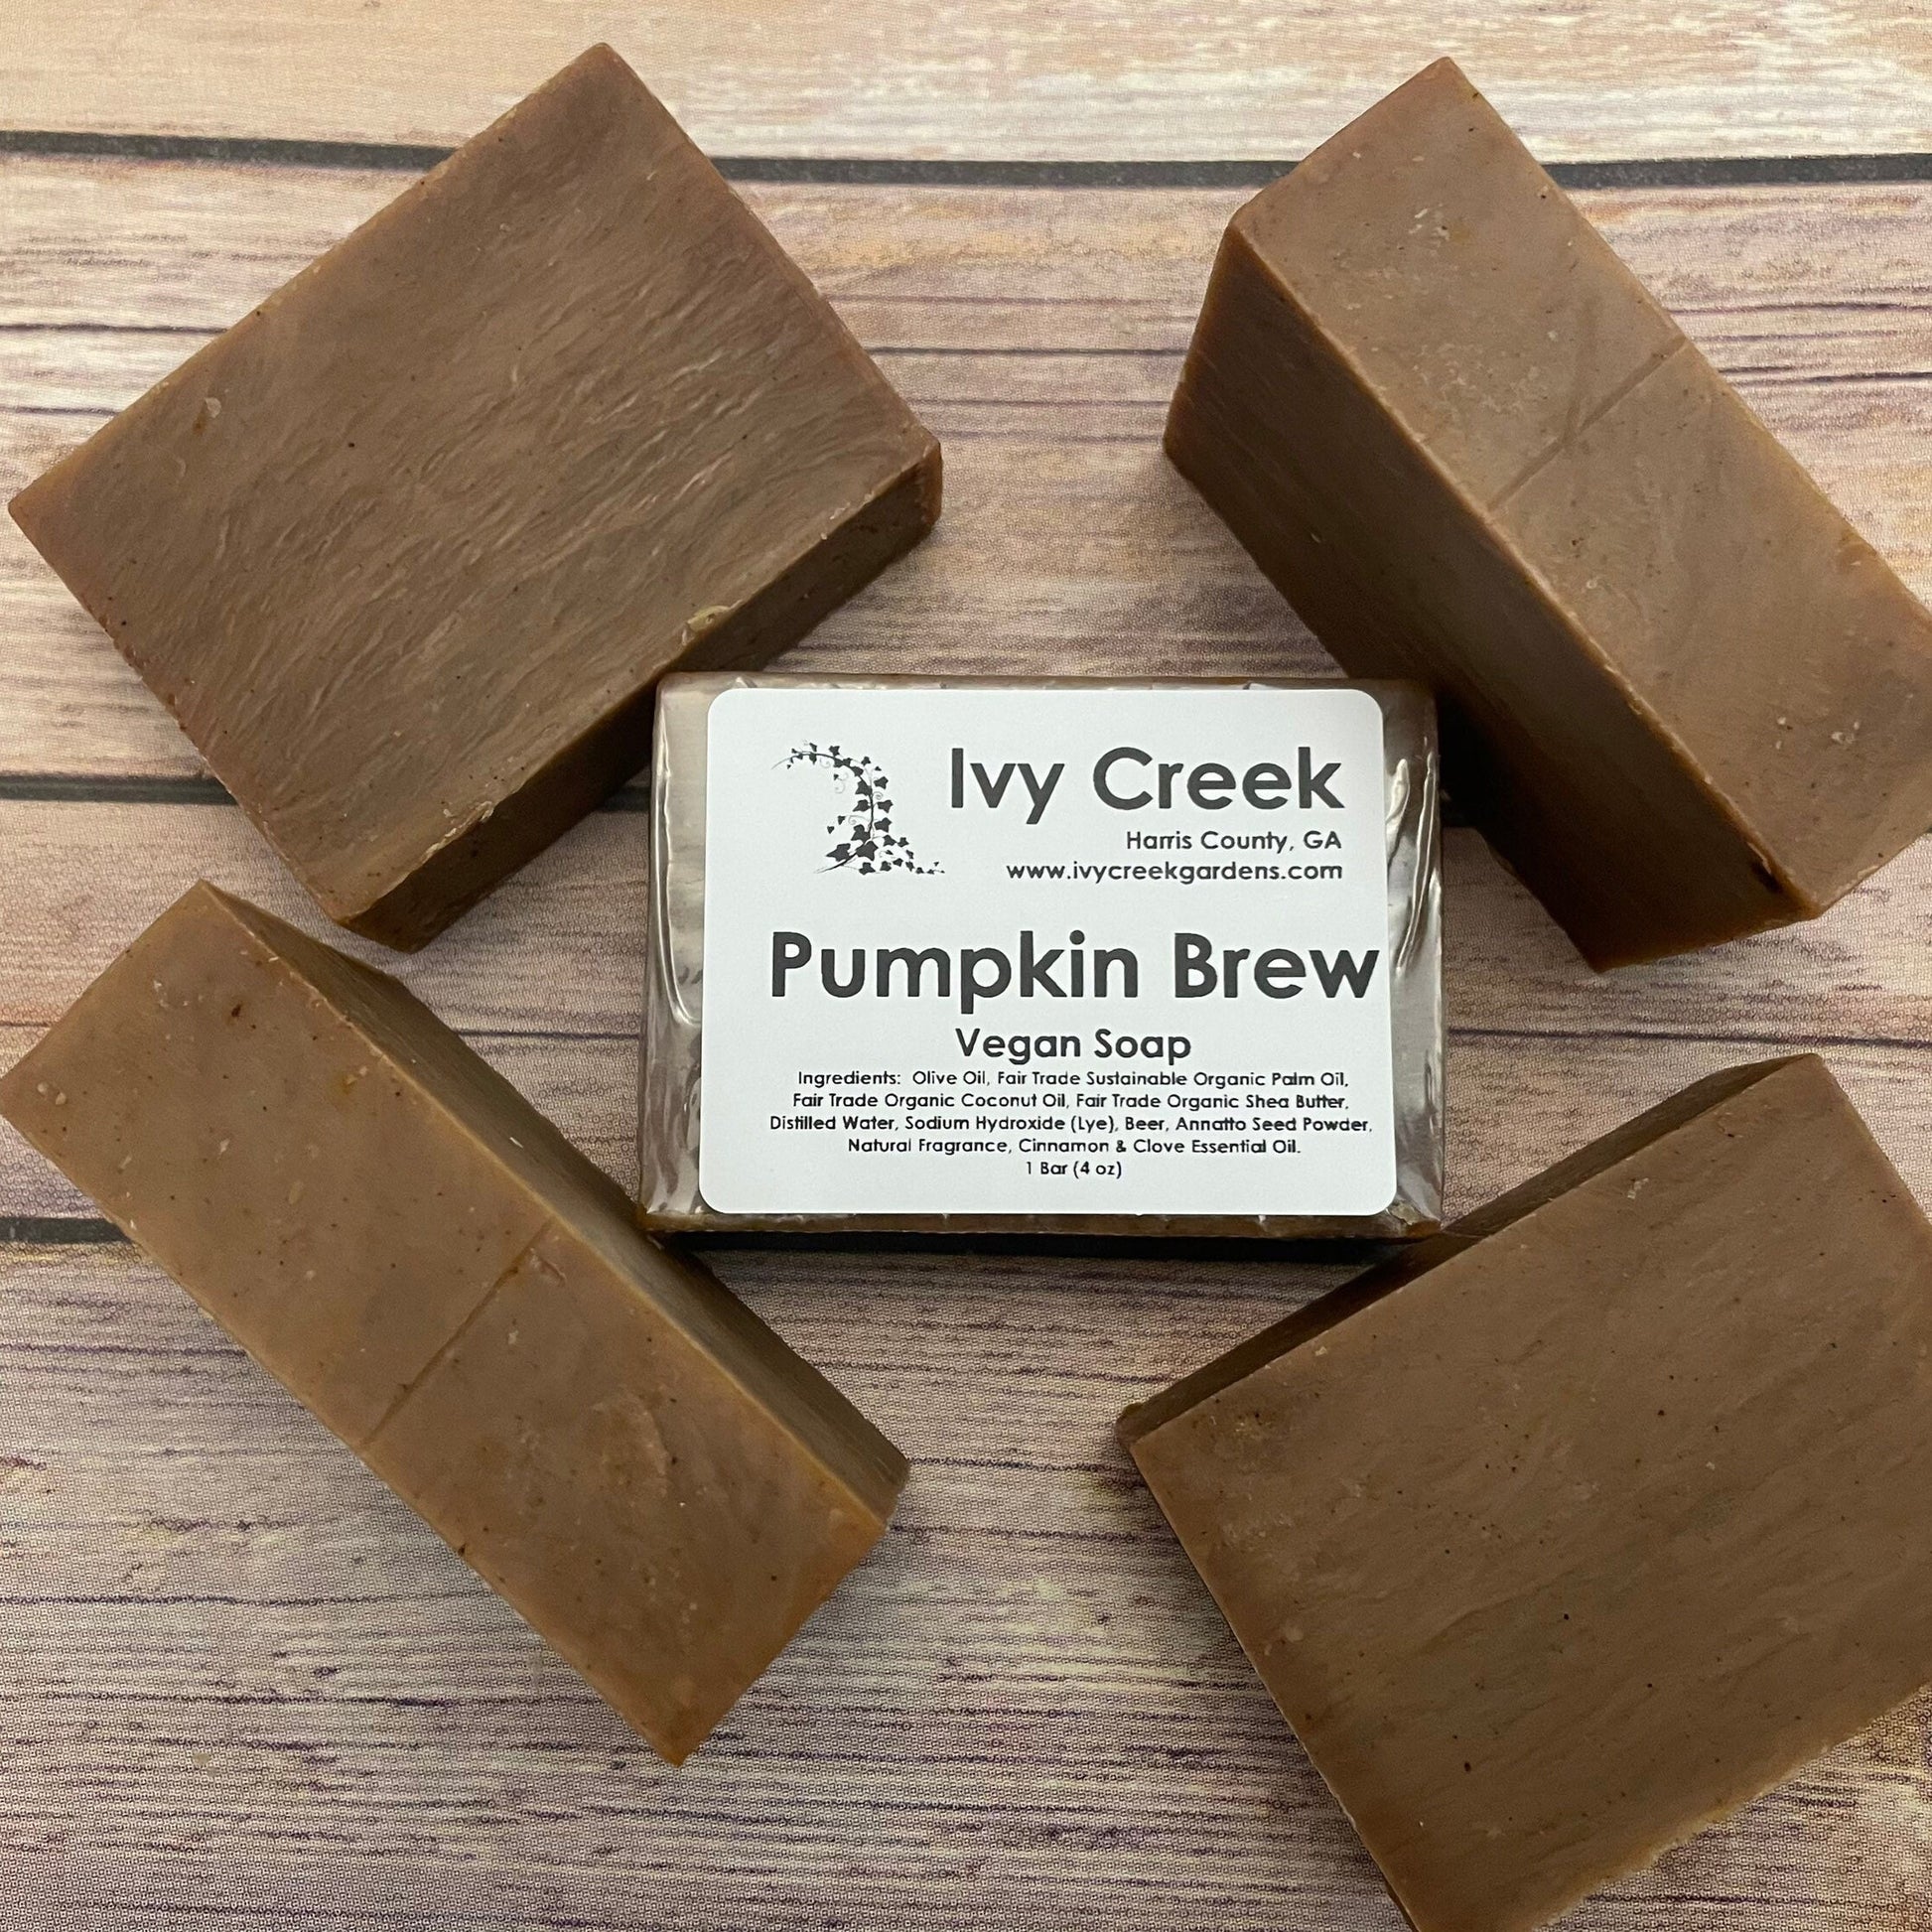 Ivy Creek Pumpkin Brew Vegan Soap | Spicy Pumpkin Beer Soap Bar | Natural and Fair Trade Soap